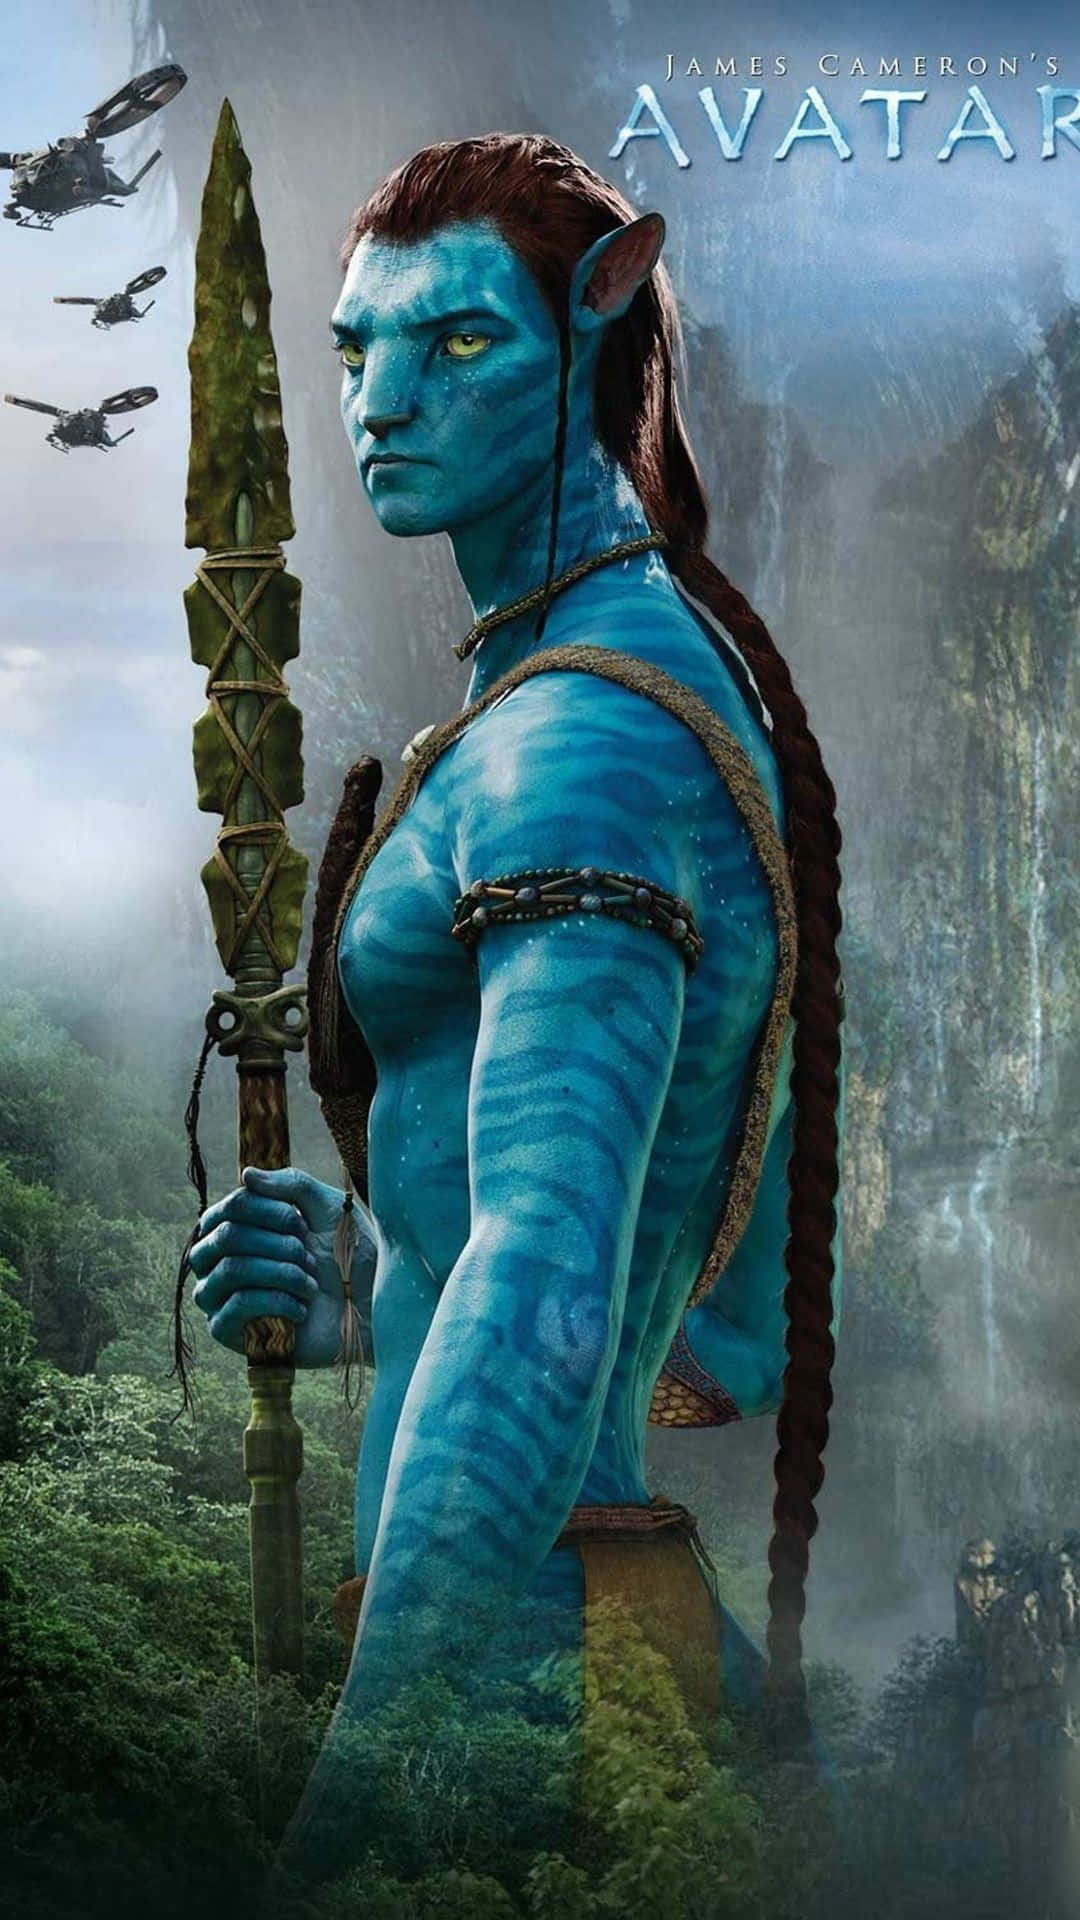 Enscene Fra Den Episke Film Avatar.